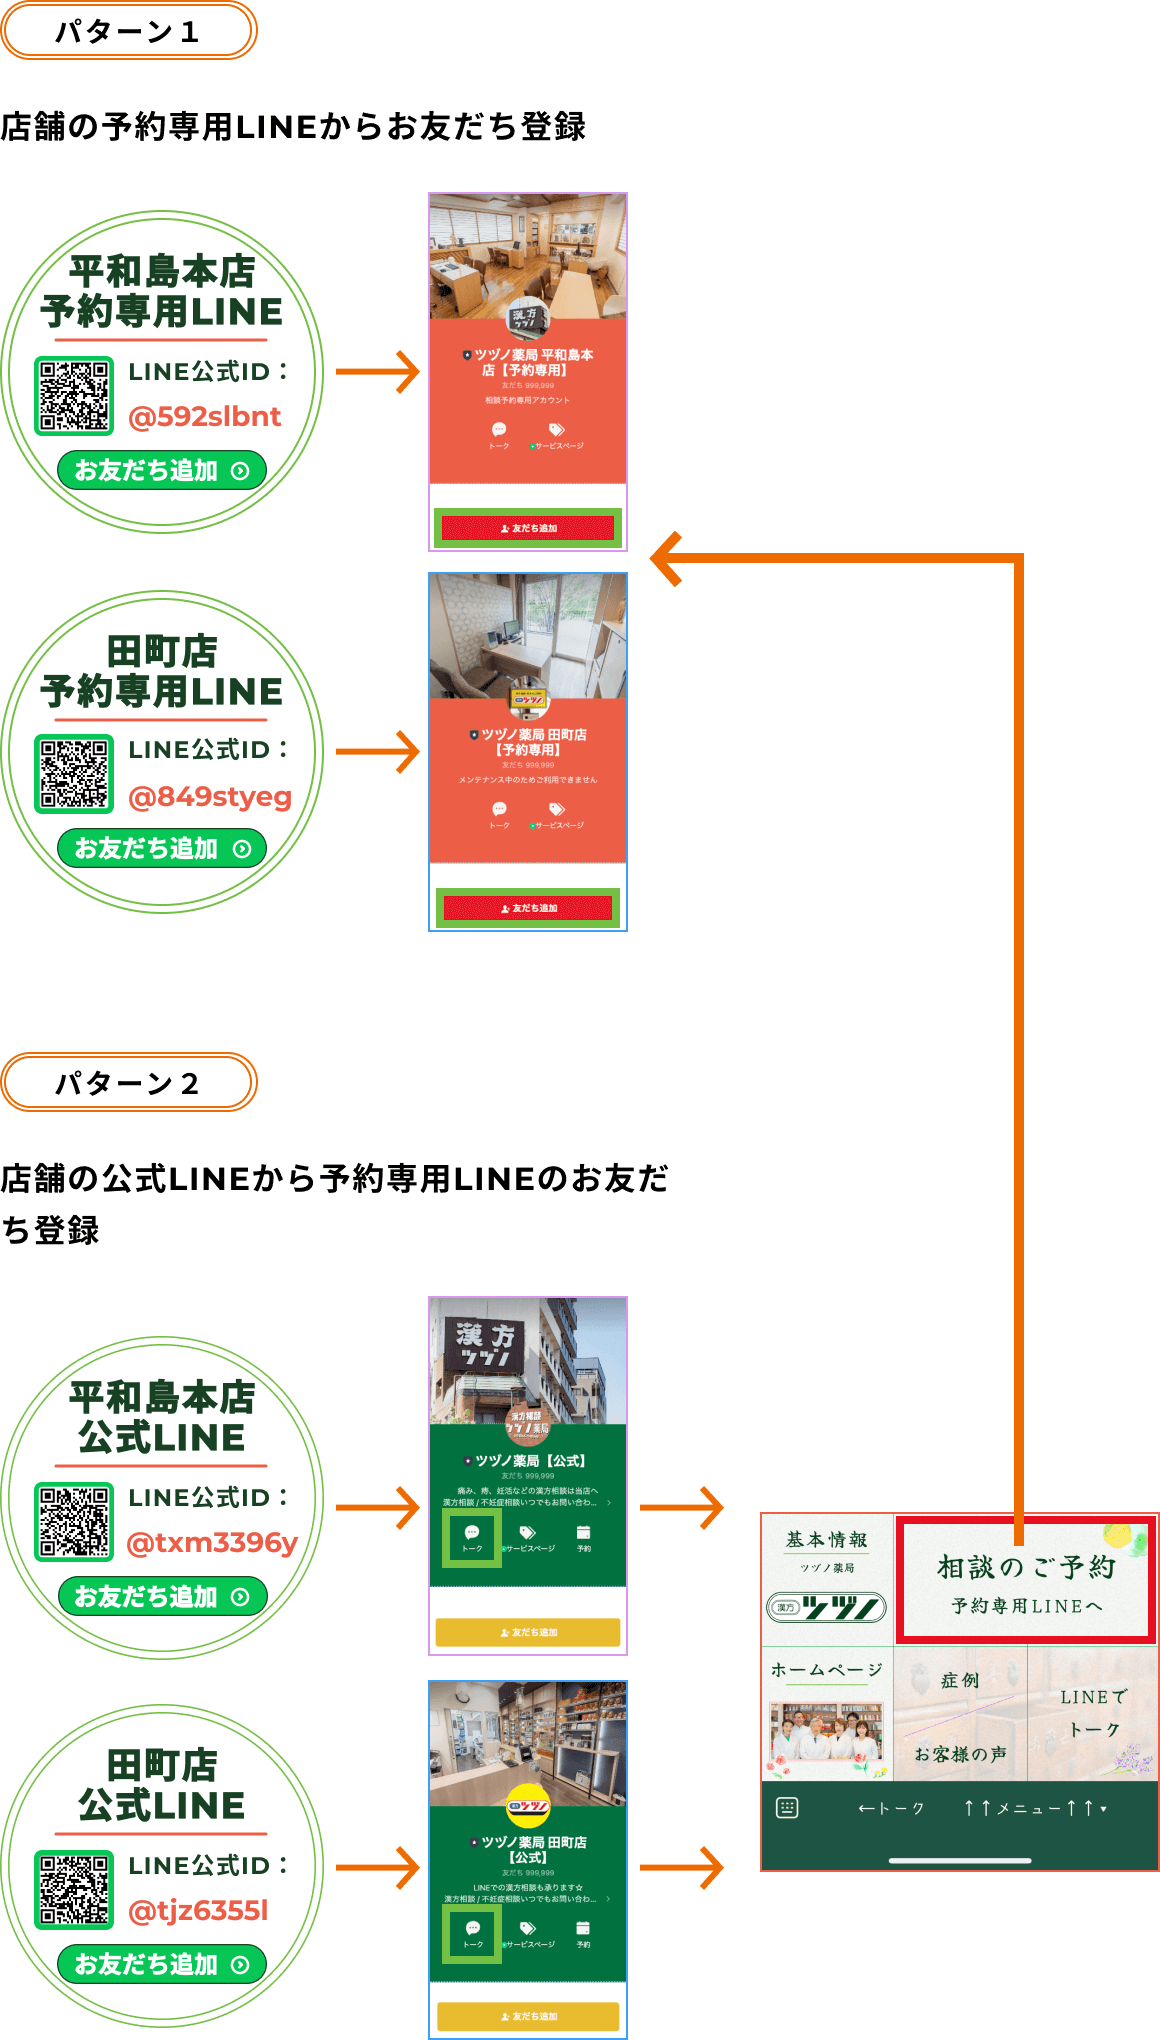 漢方ツヅノ薬局の漢方相談を店舗のLINE公式から行う手順を説明している画像